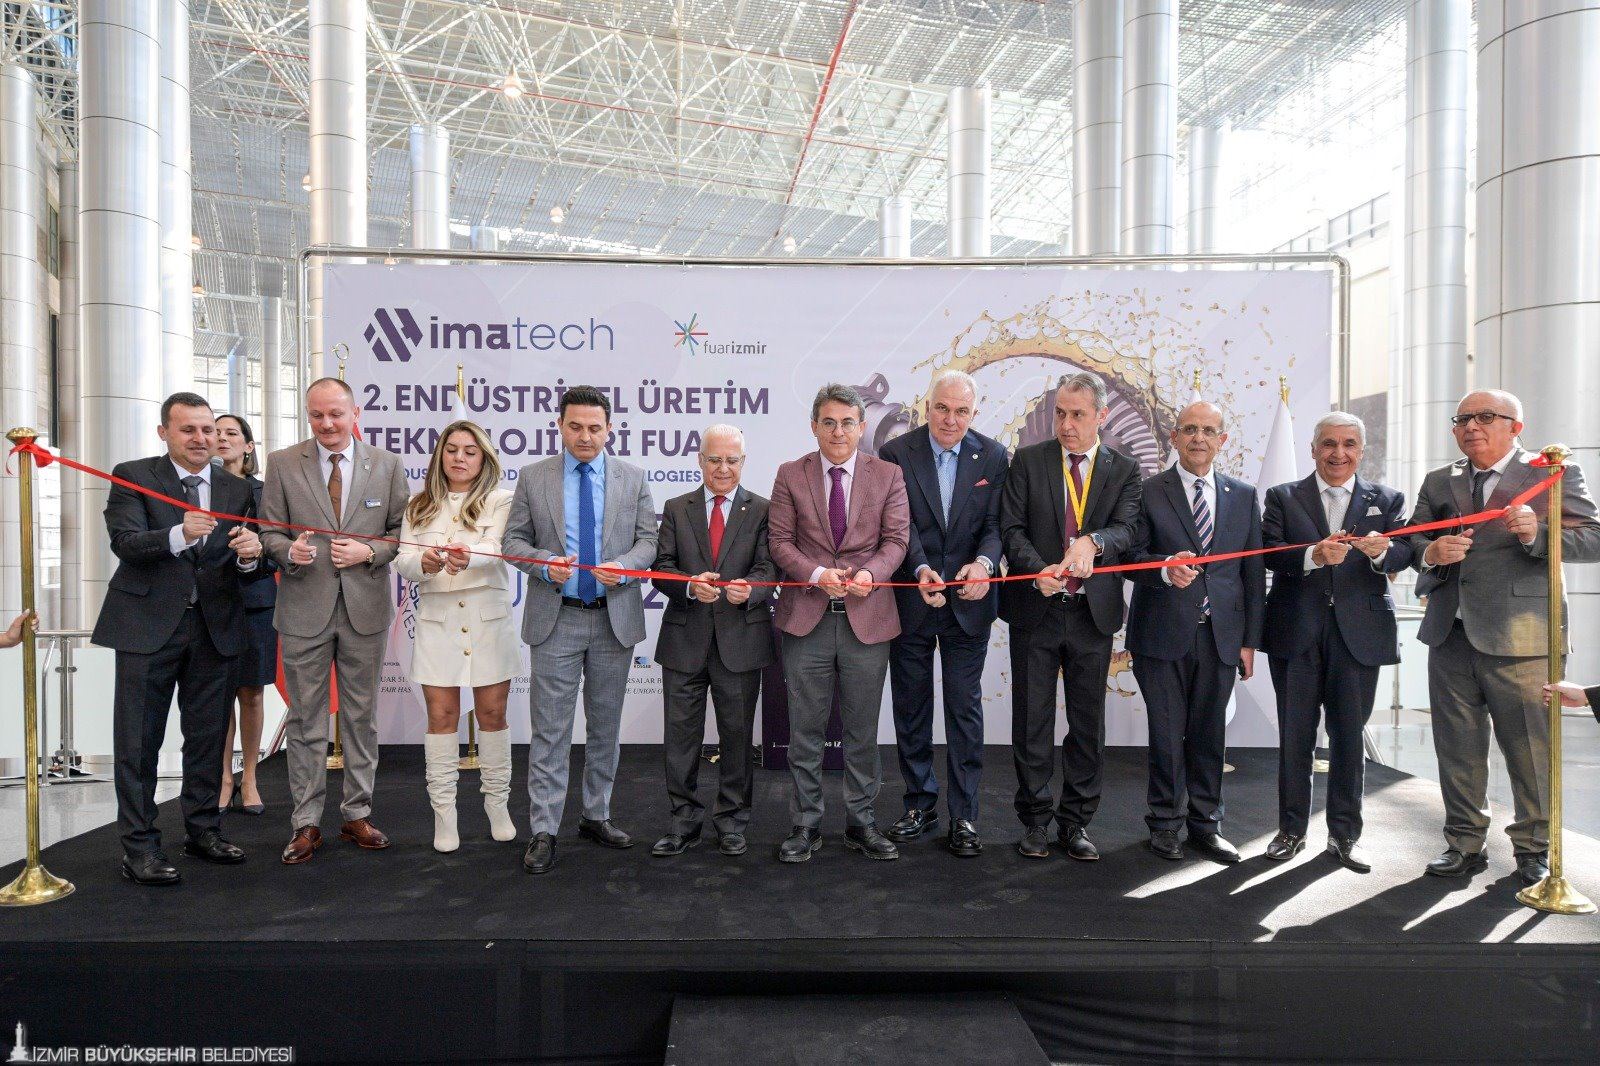  IMATECH - Endüstriyel Üretim Teknolojileri Fuarı kapılarını açtı